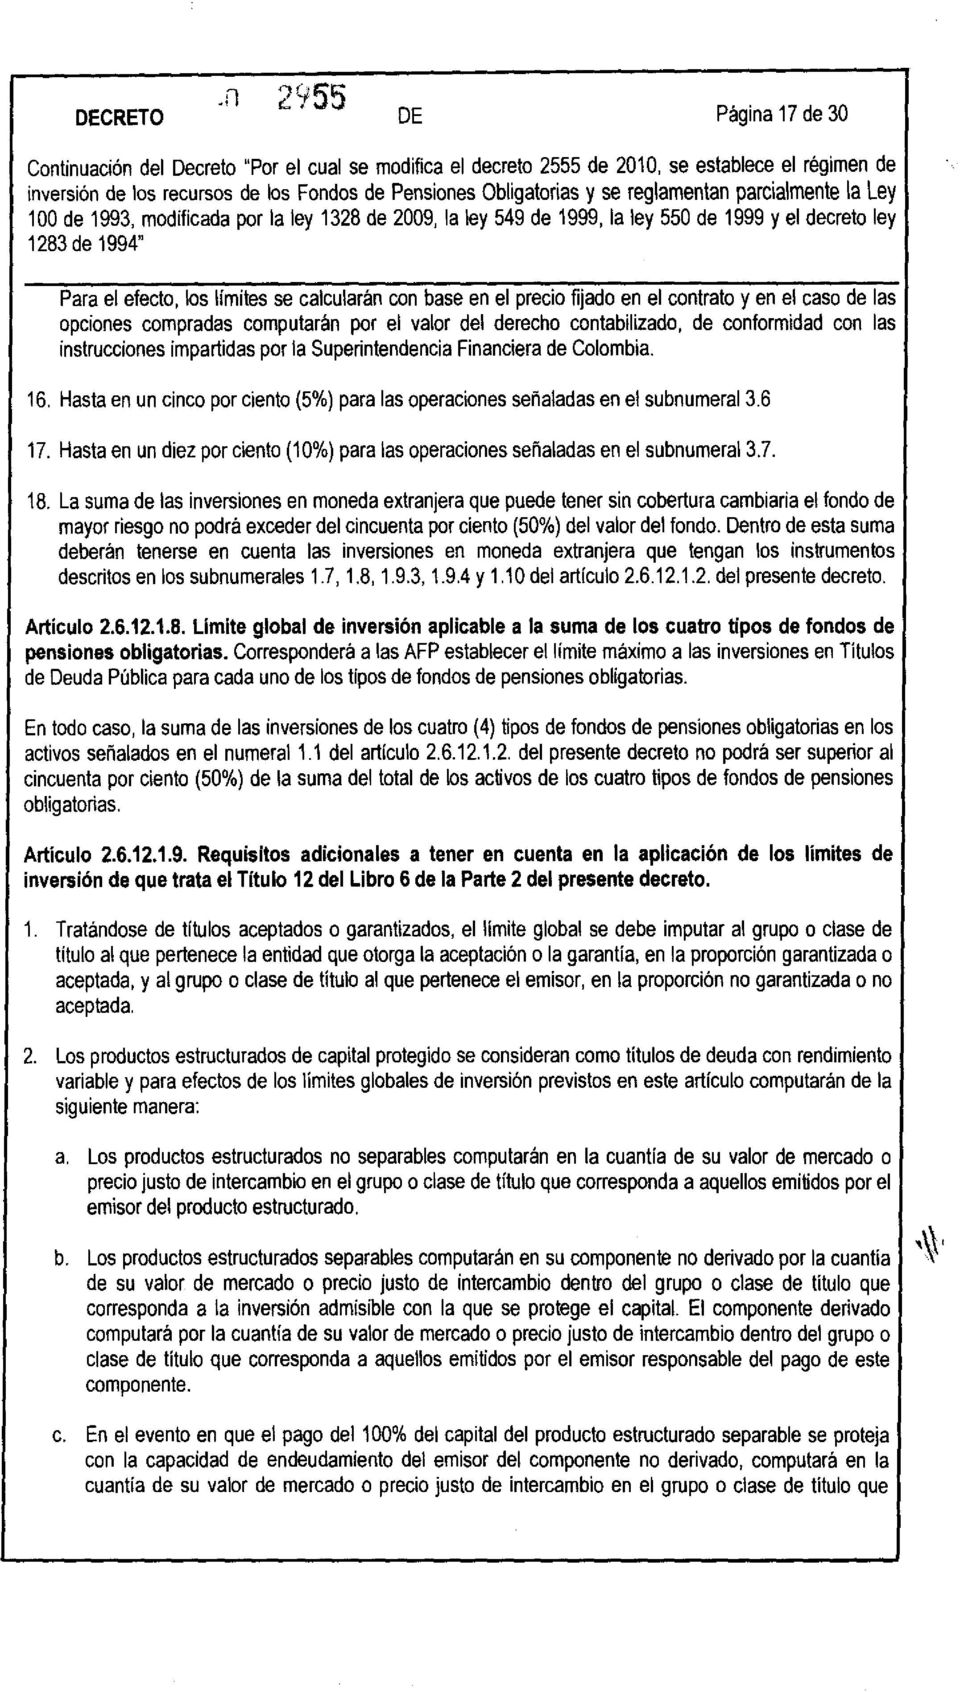 contabilizado, de conformidad con las instrucciones impartidas por la Superintendencia Financiera de Colombia. 16. Hasta en un cinco por ciento (5%) para las operaciones señaladas en el subnumeral3.